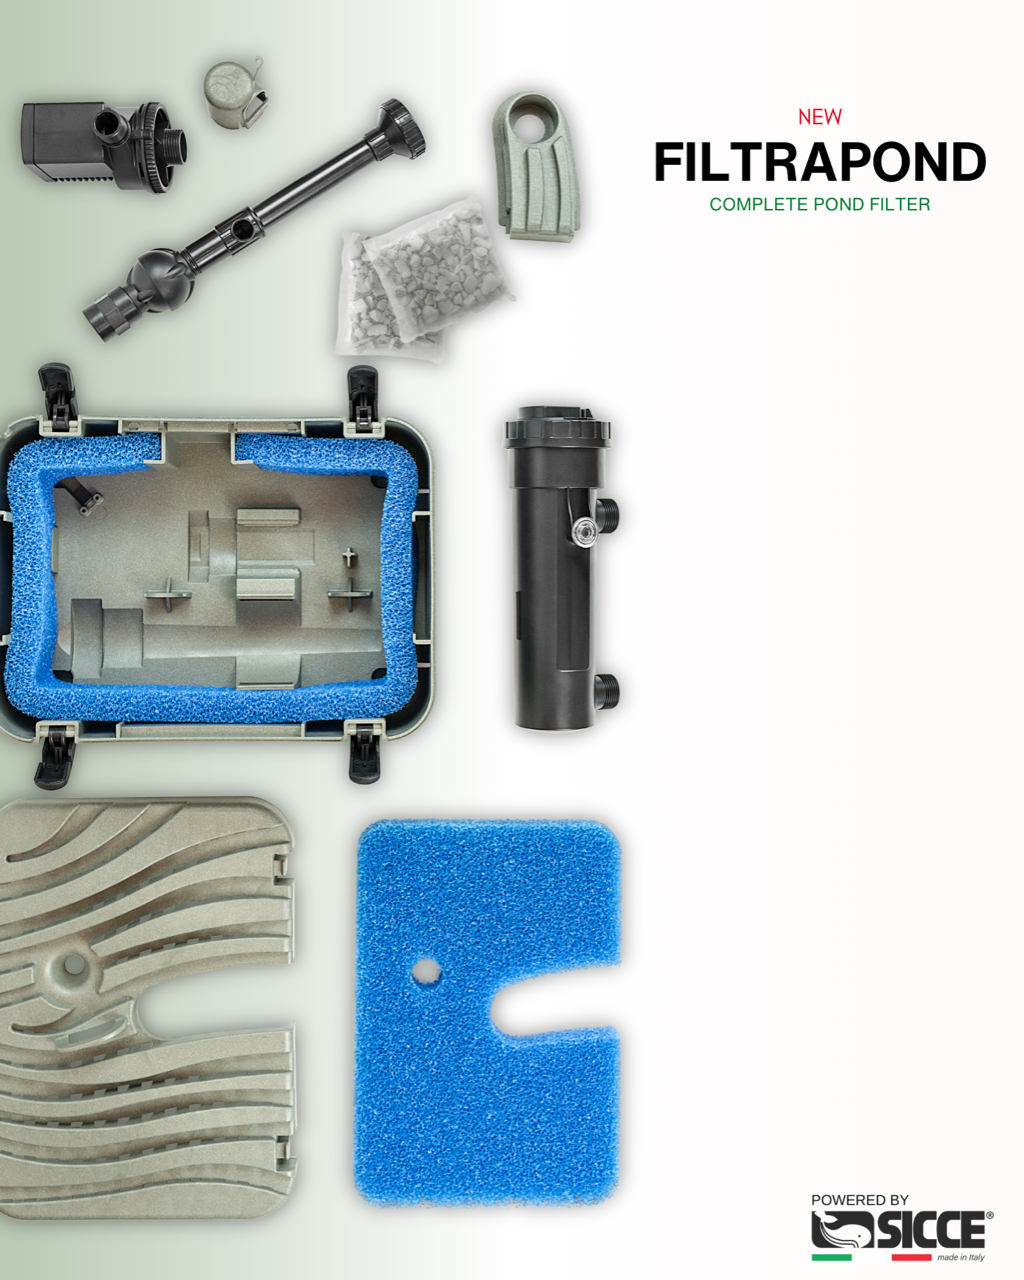 FiltraPond Complete Pond Filter